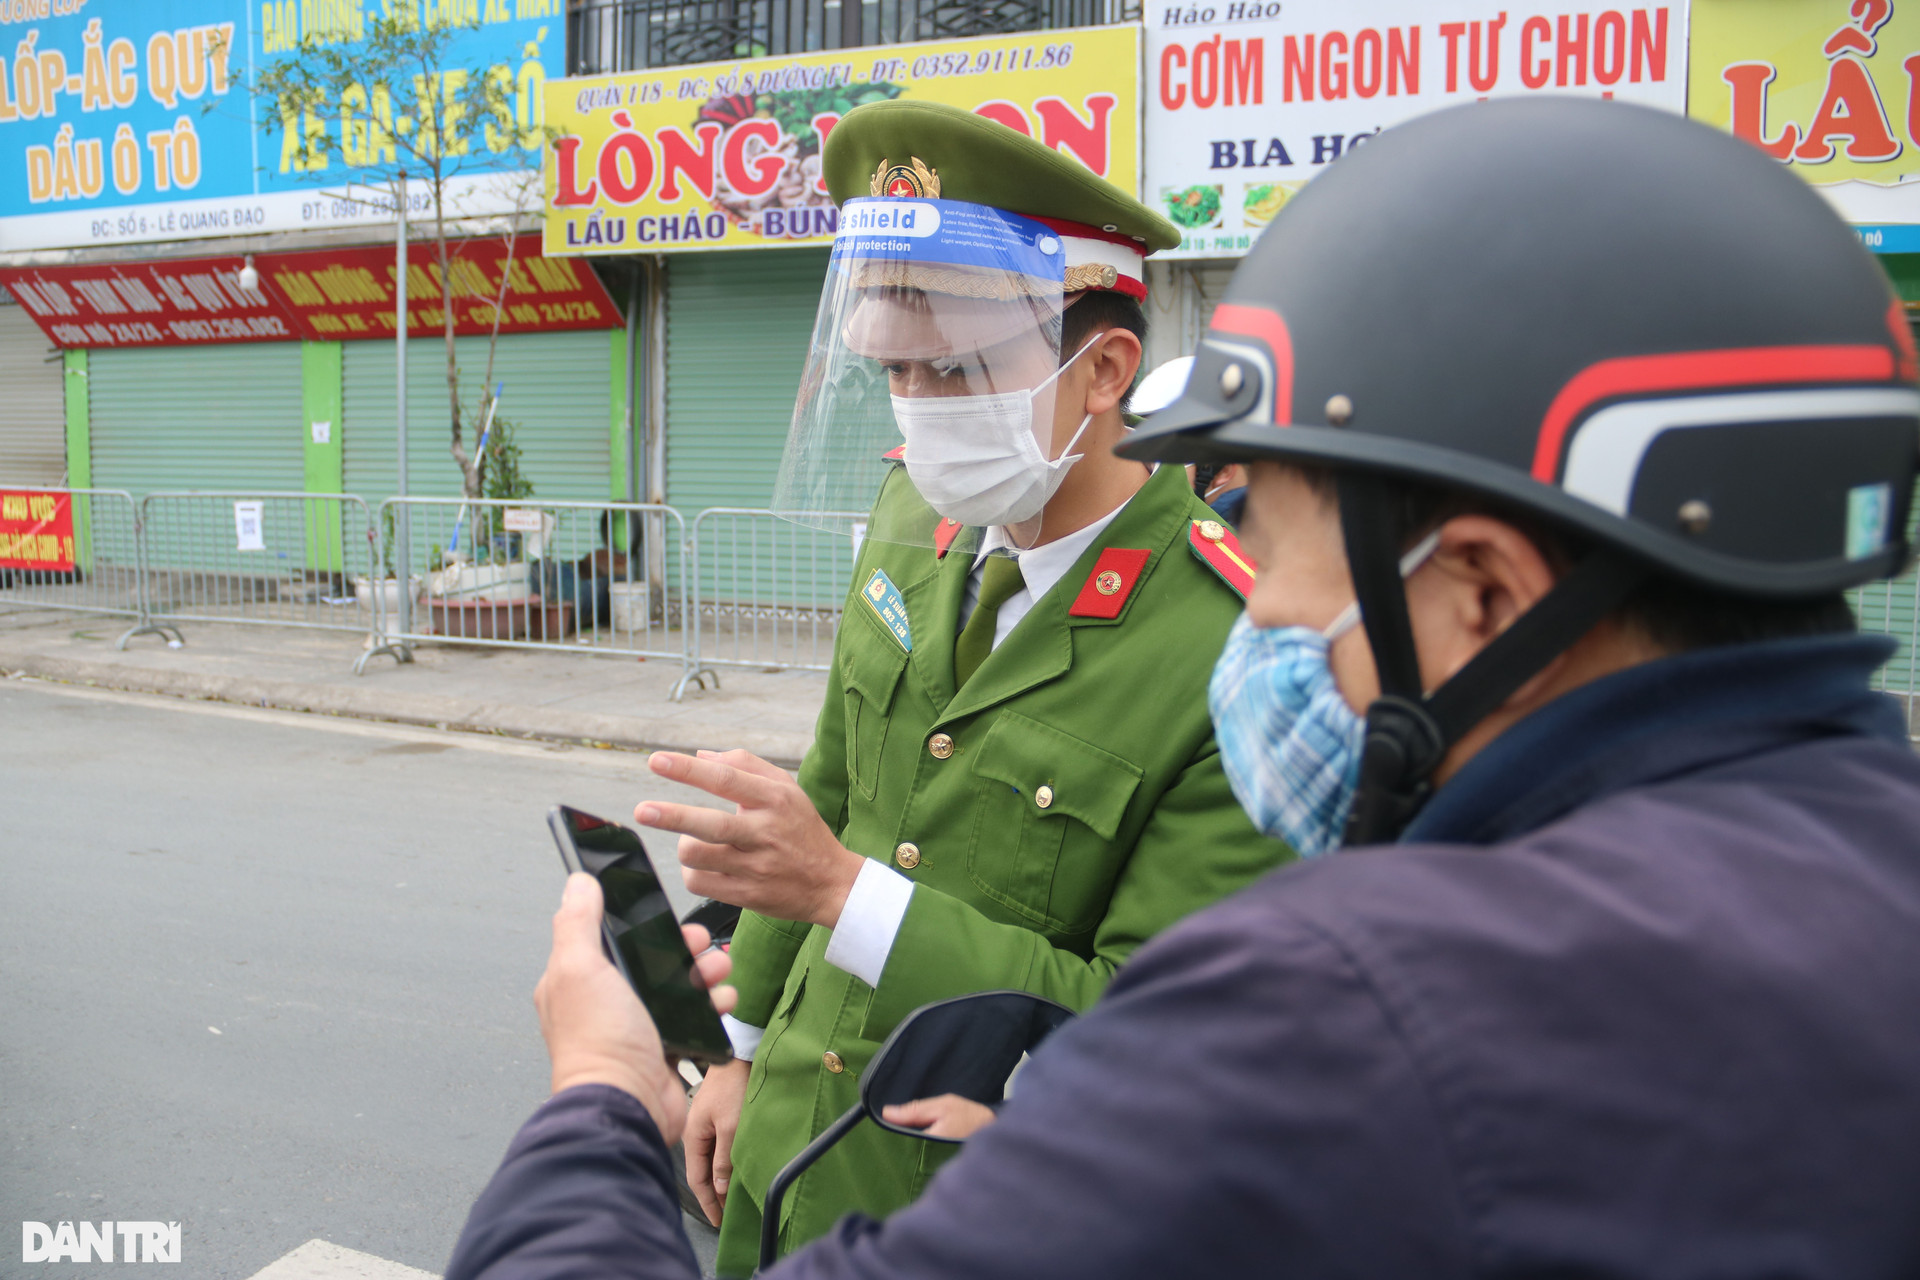 Hà Nội: Đông nghịt người quét QR Code tại ổ dịch Phú Đô - 13